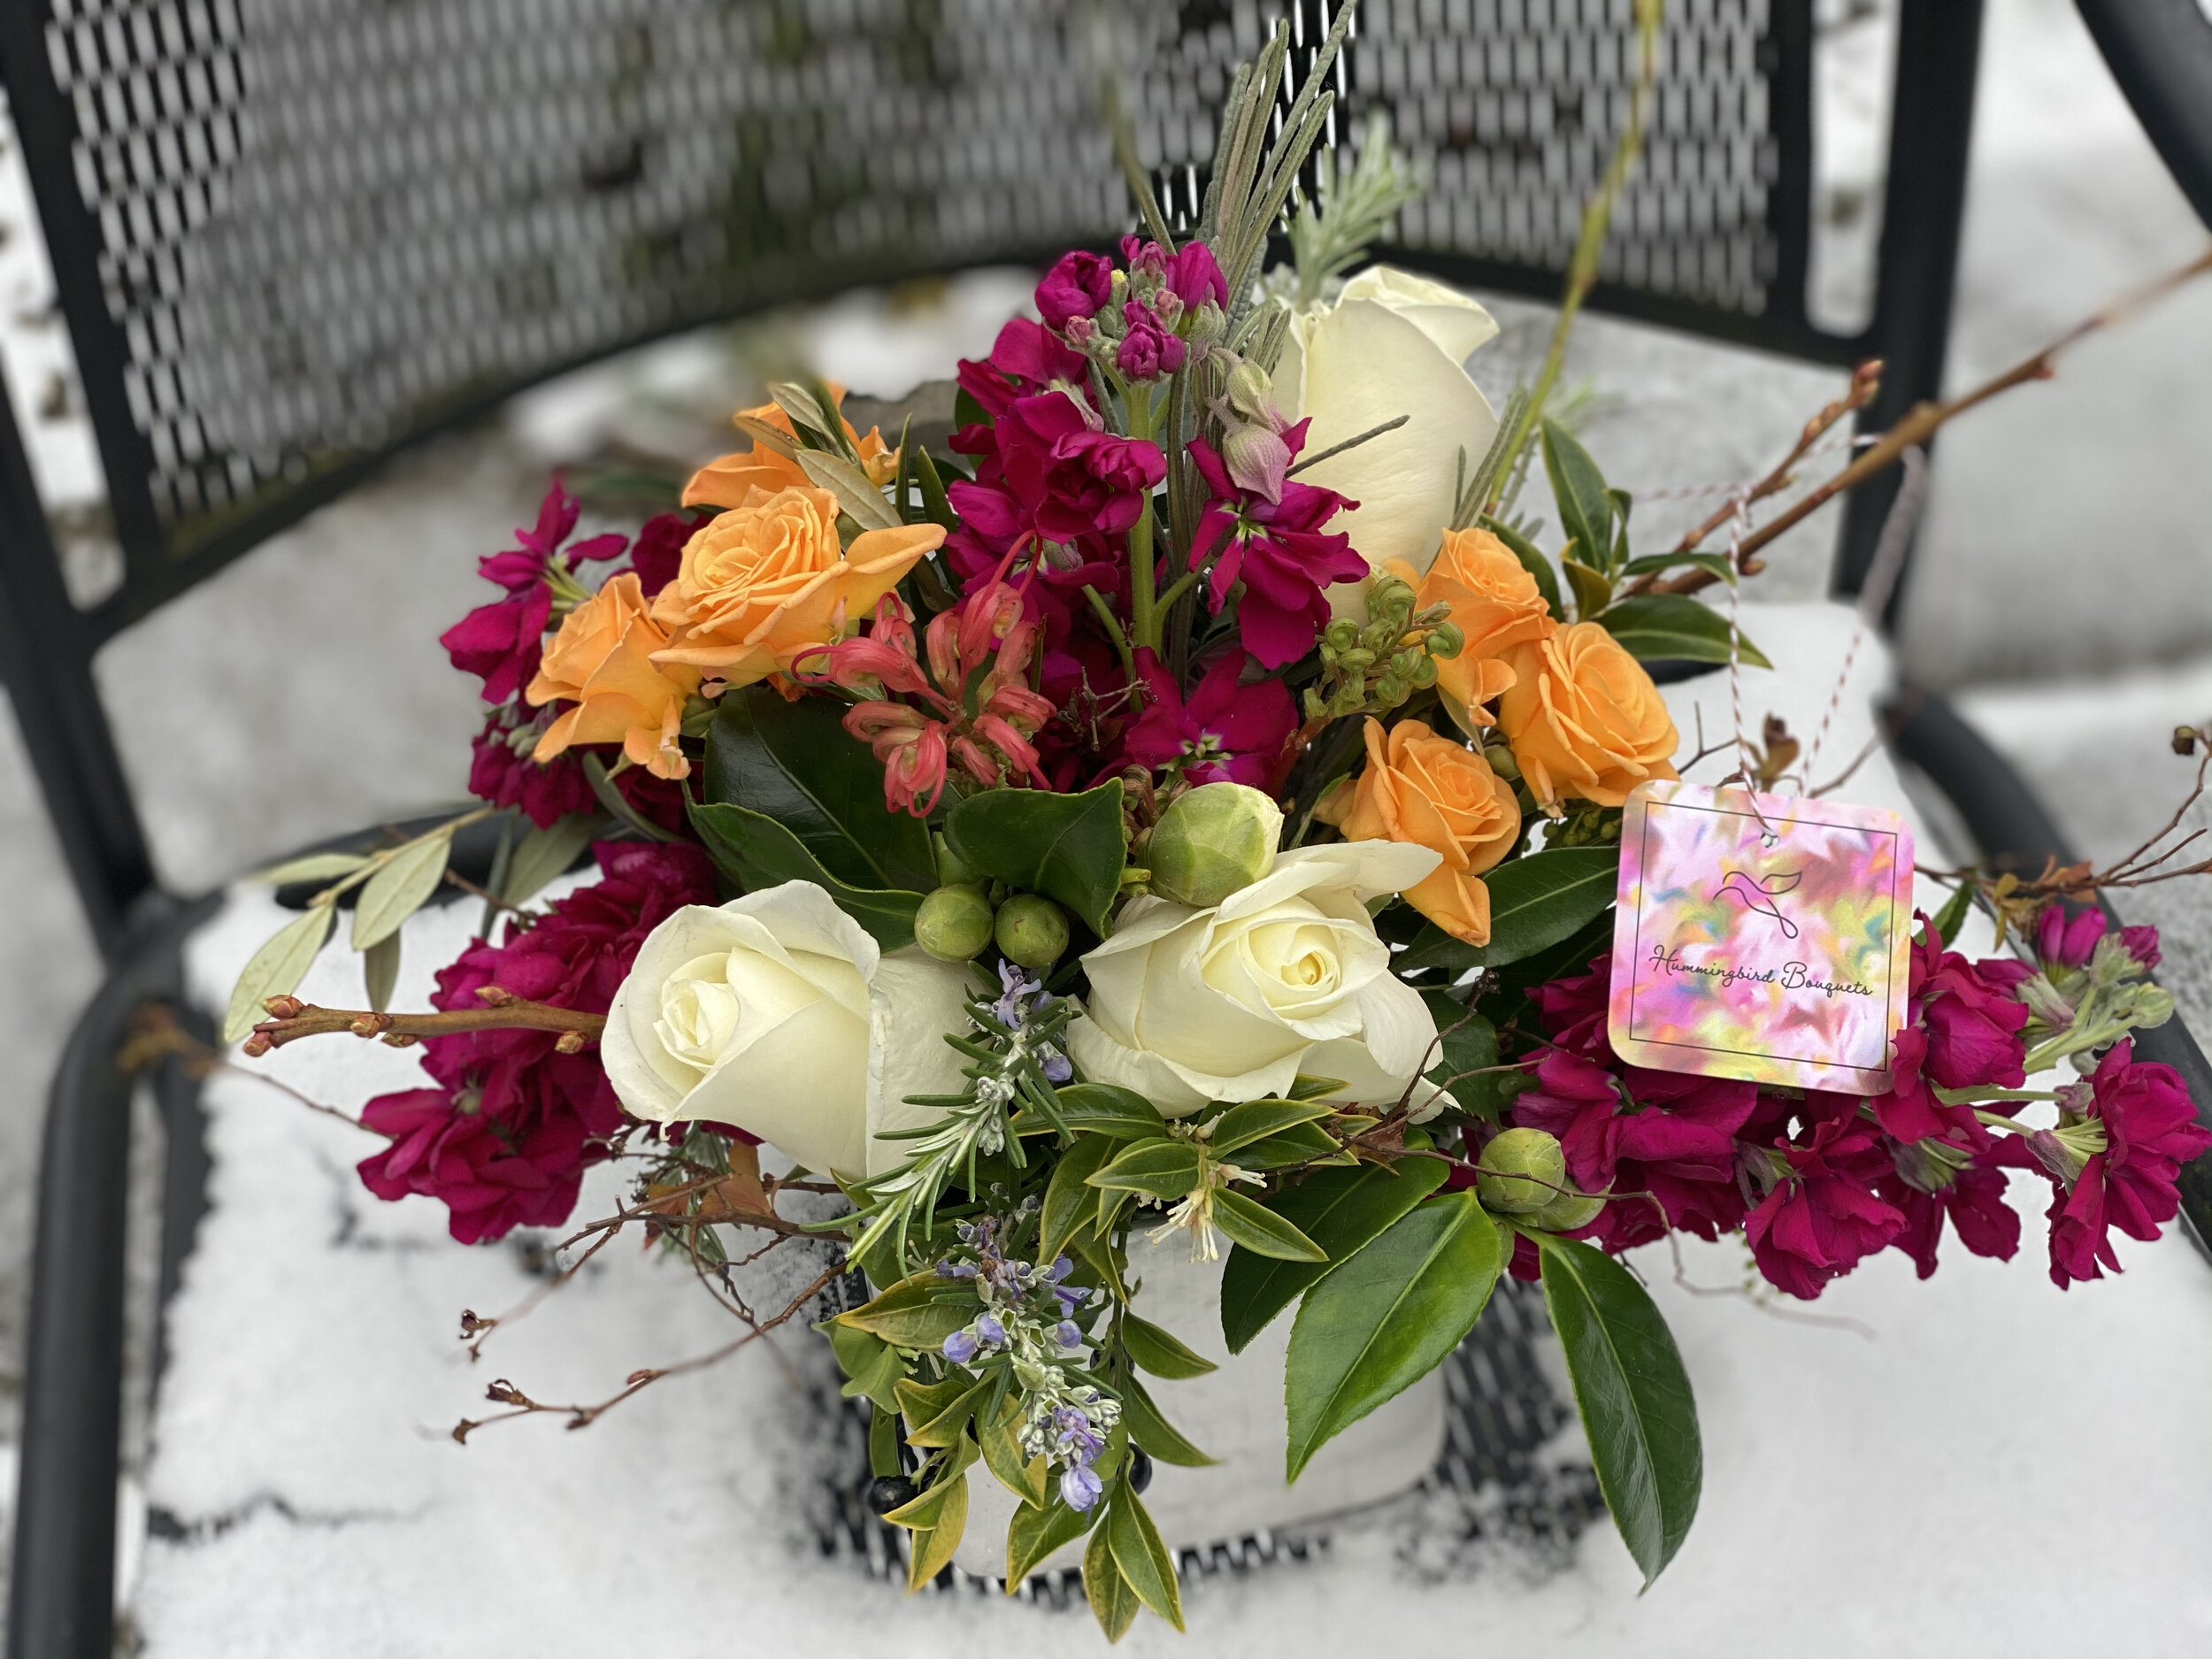 我们的情人节花束之一-所有当地鲜花由西雅图批发种植者市场提供。